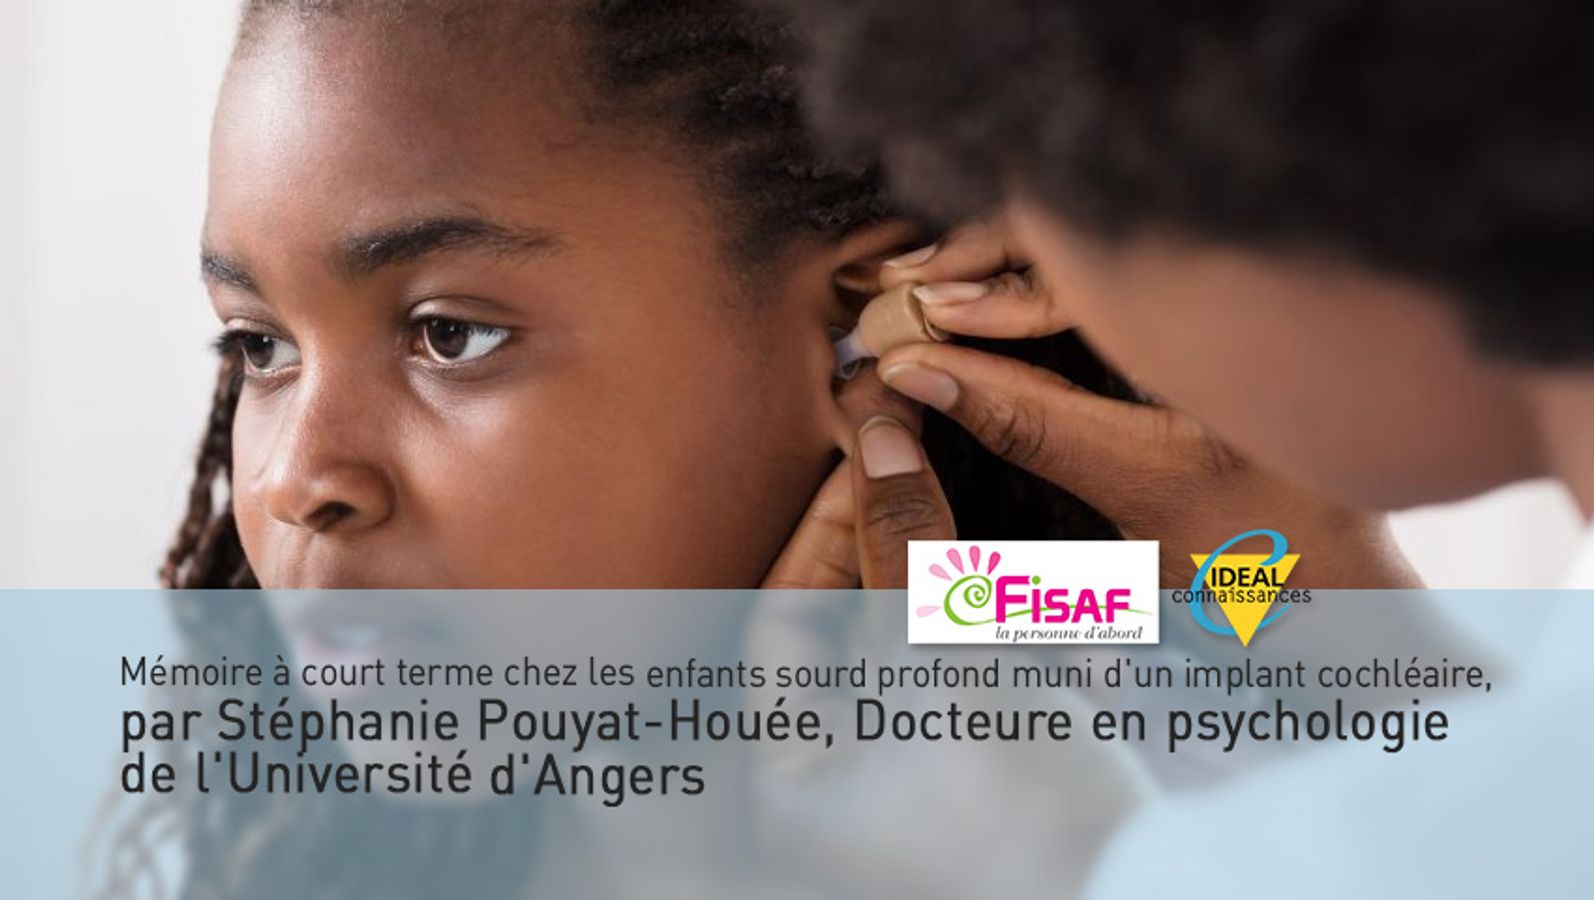 Mémoire à court terme chez l'enfant sourd profond muni d'un implant cochléaire, par Stéphanie Pouyat-Houée, Docteure en psychologie de l'Université d'Angers.